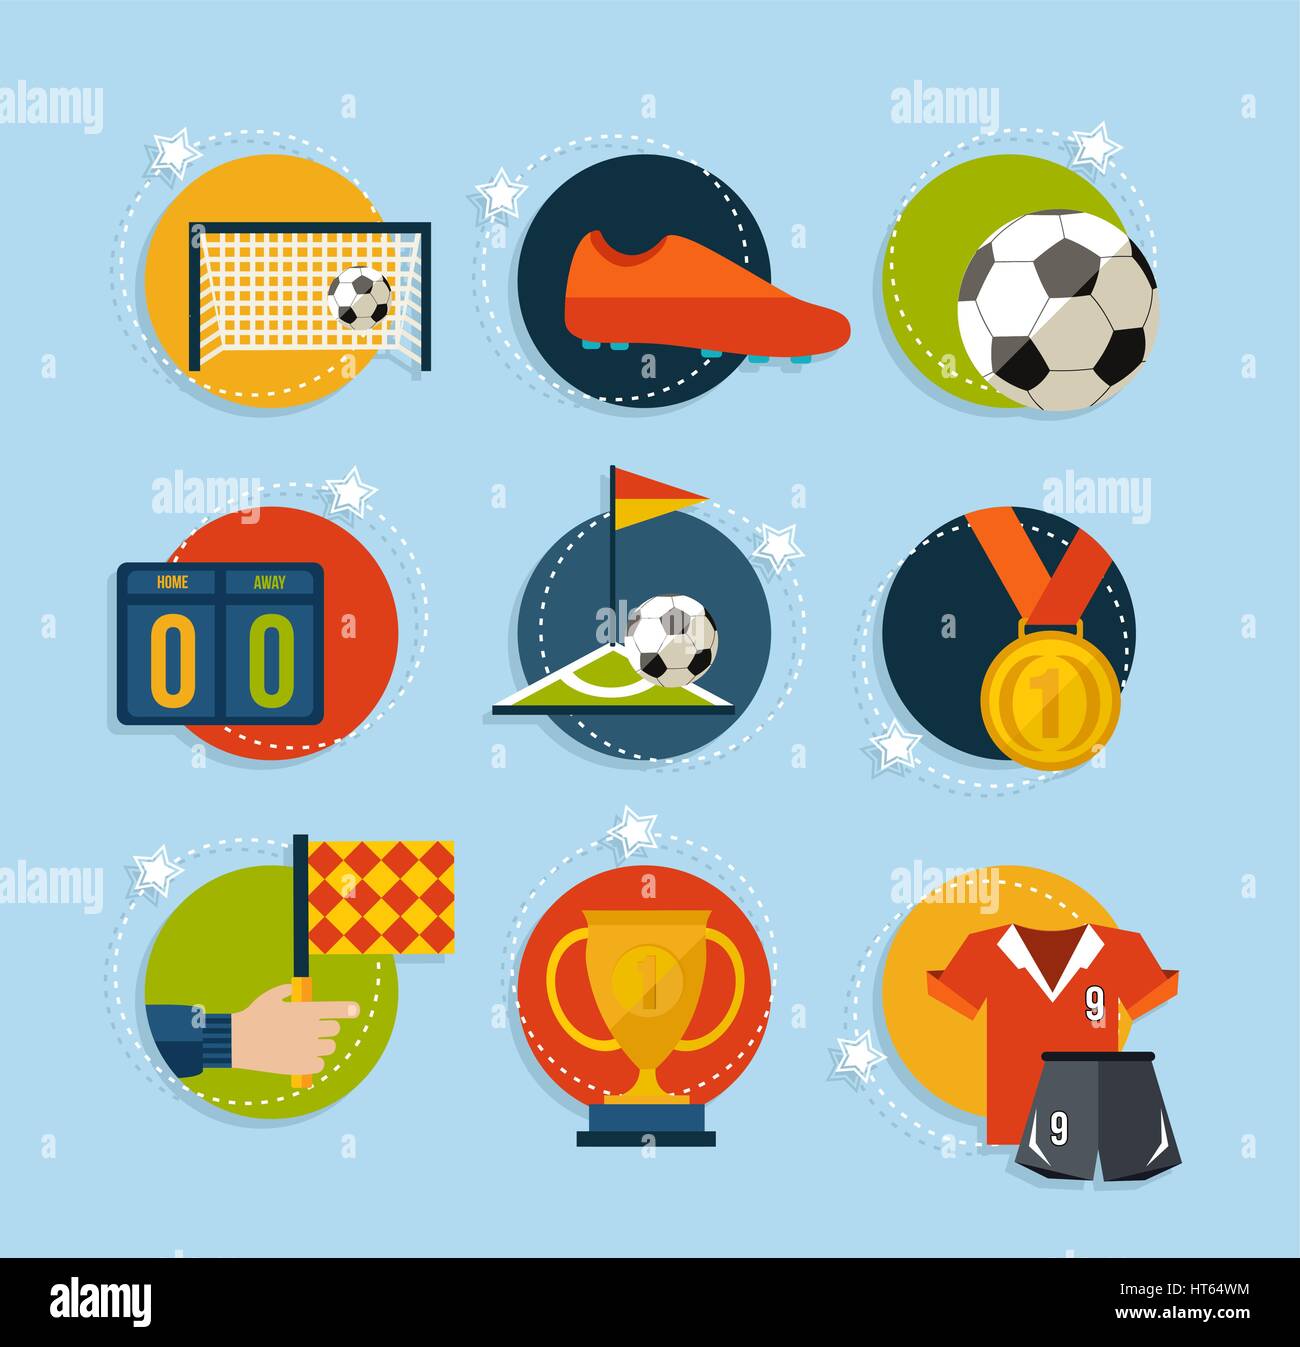 Fußball-Kultur-flache Icon-Set. Sport-Elemente für Football-Spiel, Ball, Schuhe, Champion Cup und mehr enthält. EPS10 Vektor. Stock Vektor